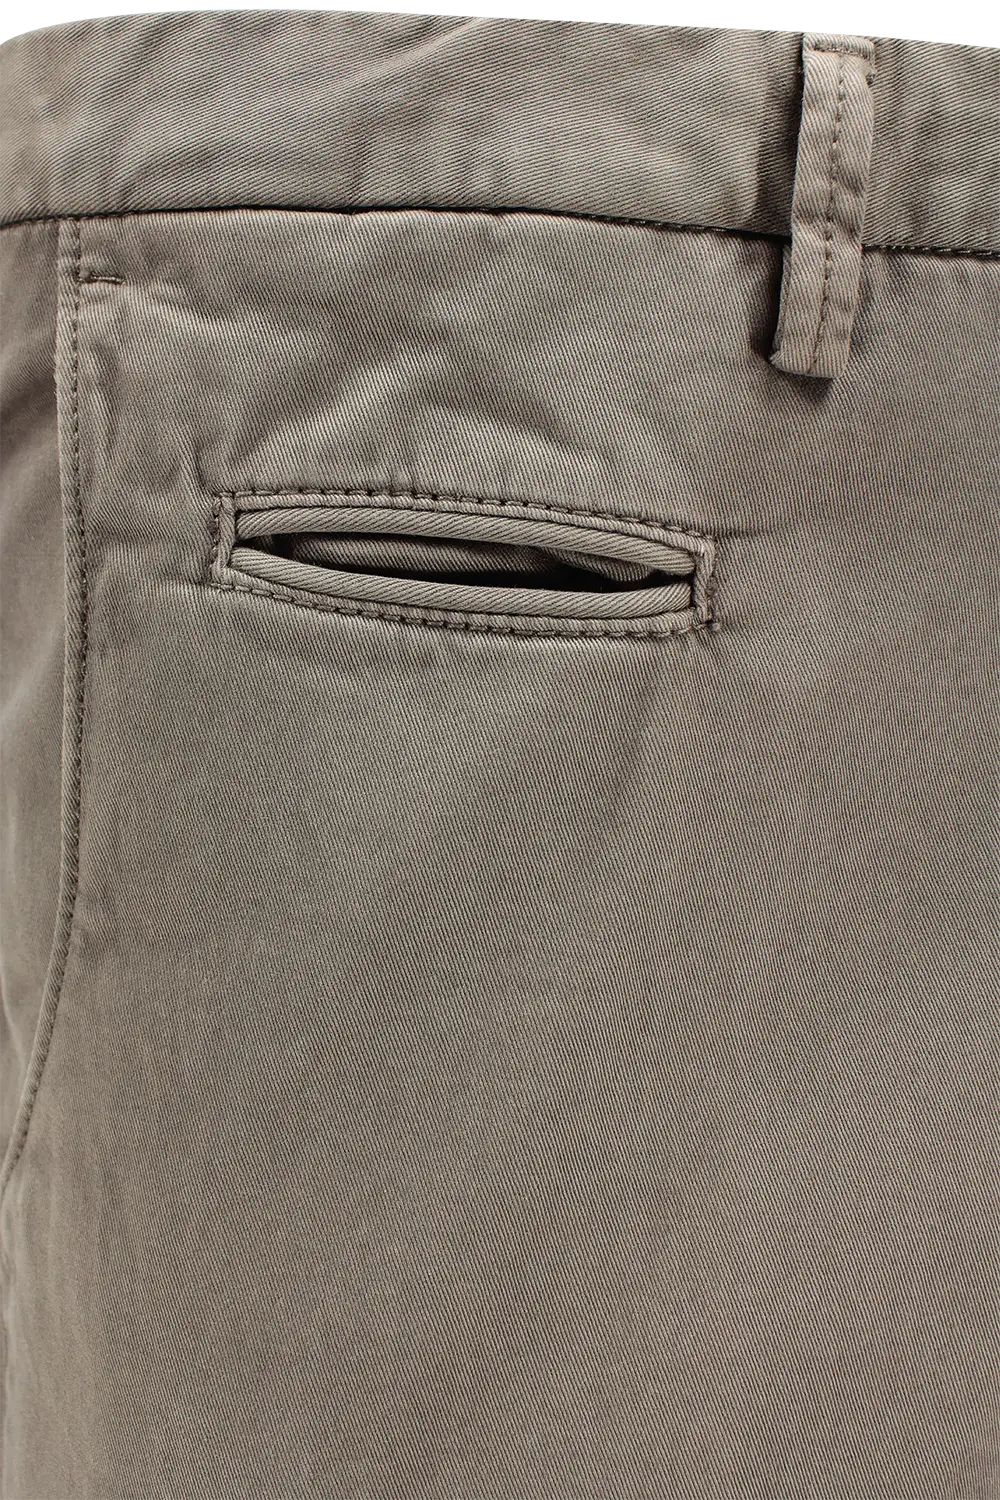 Pantalone in cotone tinto in capo grigio taschino